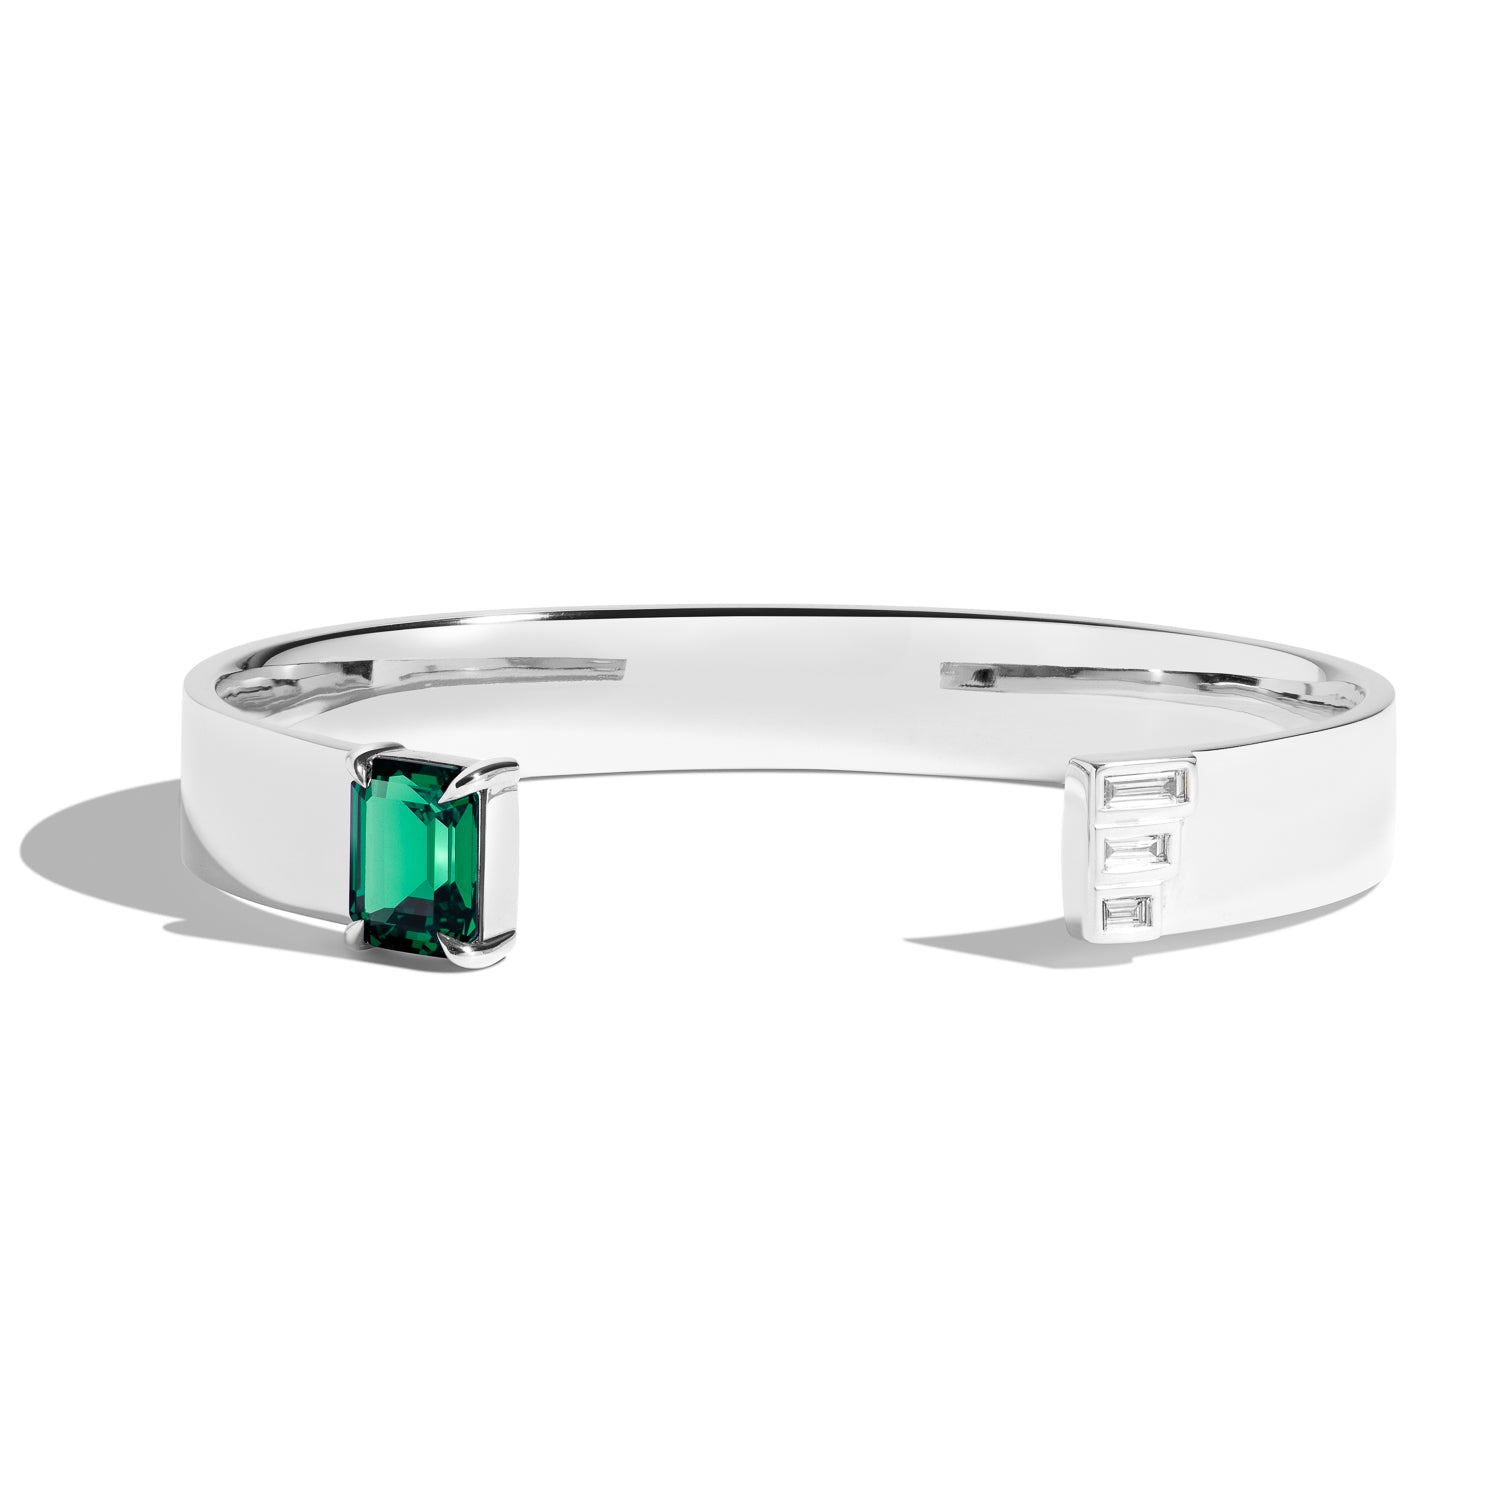 Shahla Karimi Emerald Emerald-Cut Cuff w/ Baguettes 14K White Gold or Platinum